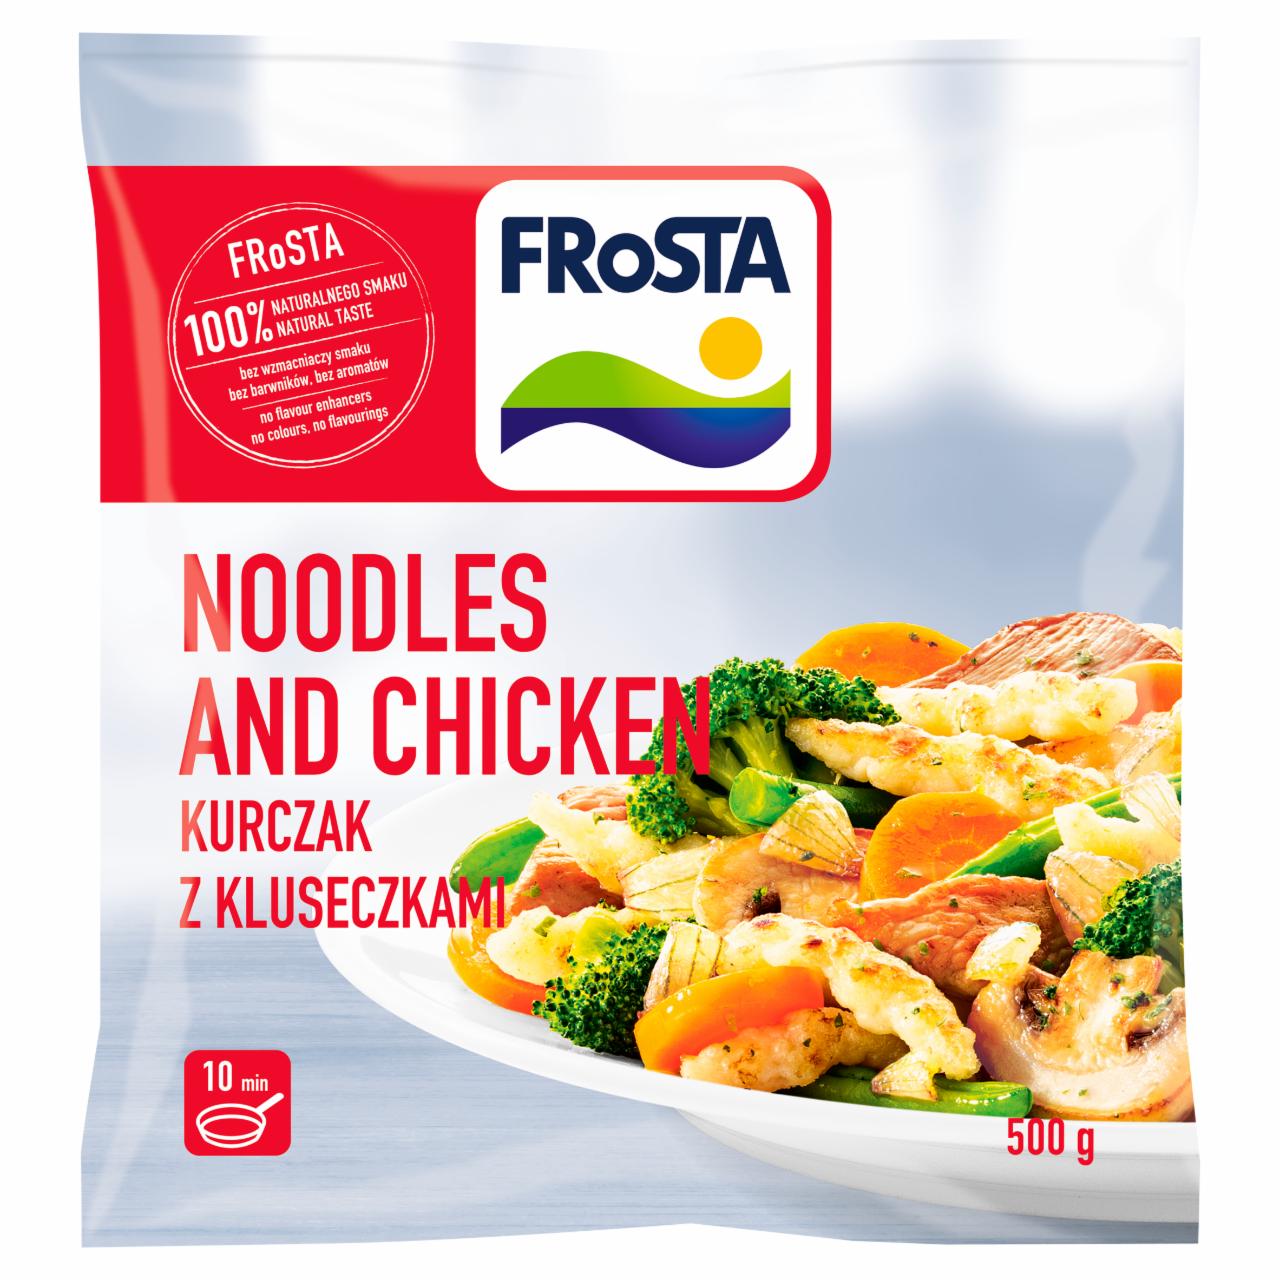 Zdjęcia - FRoSTA Noodles and Chicken Kurczak z kluseczkami 500 g